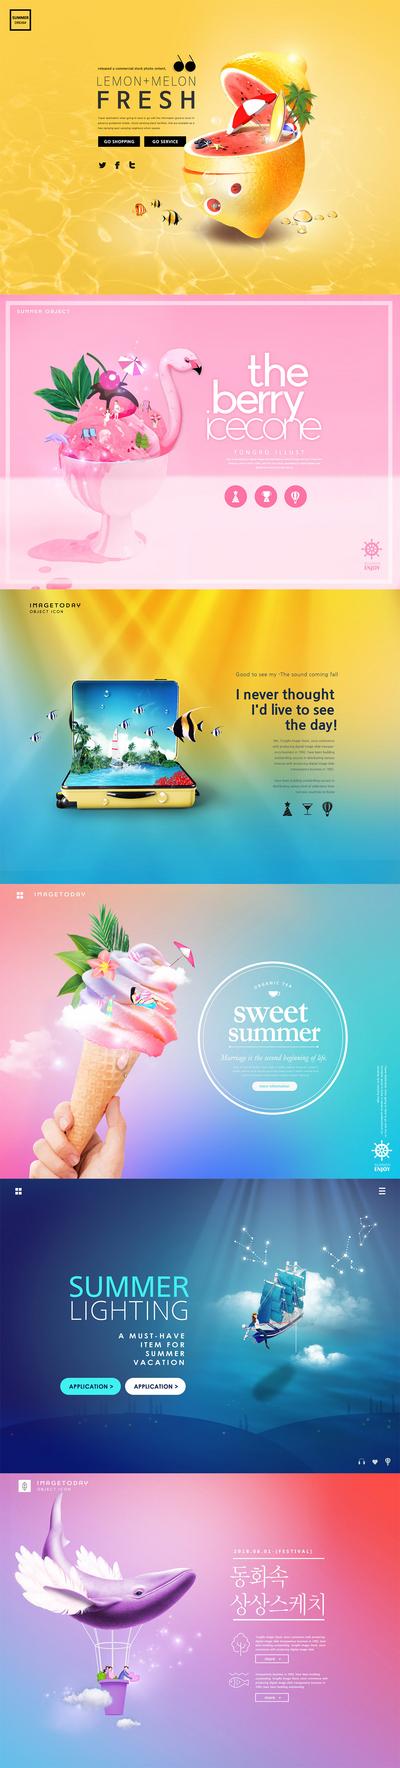 南门网 冰淇淋抹香鲸帆船创意炫彩旅游广告